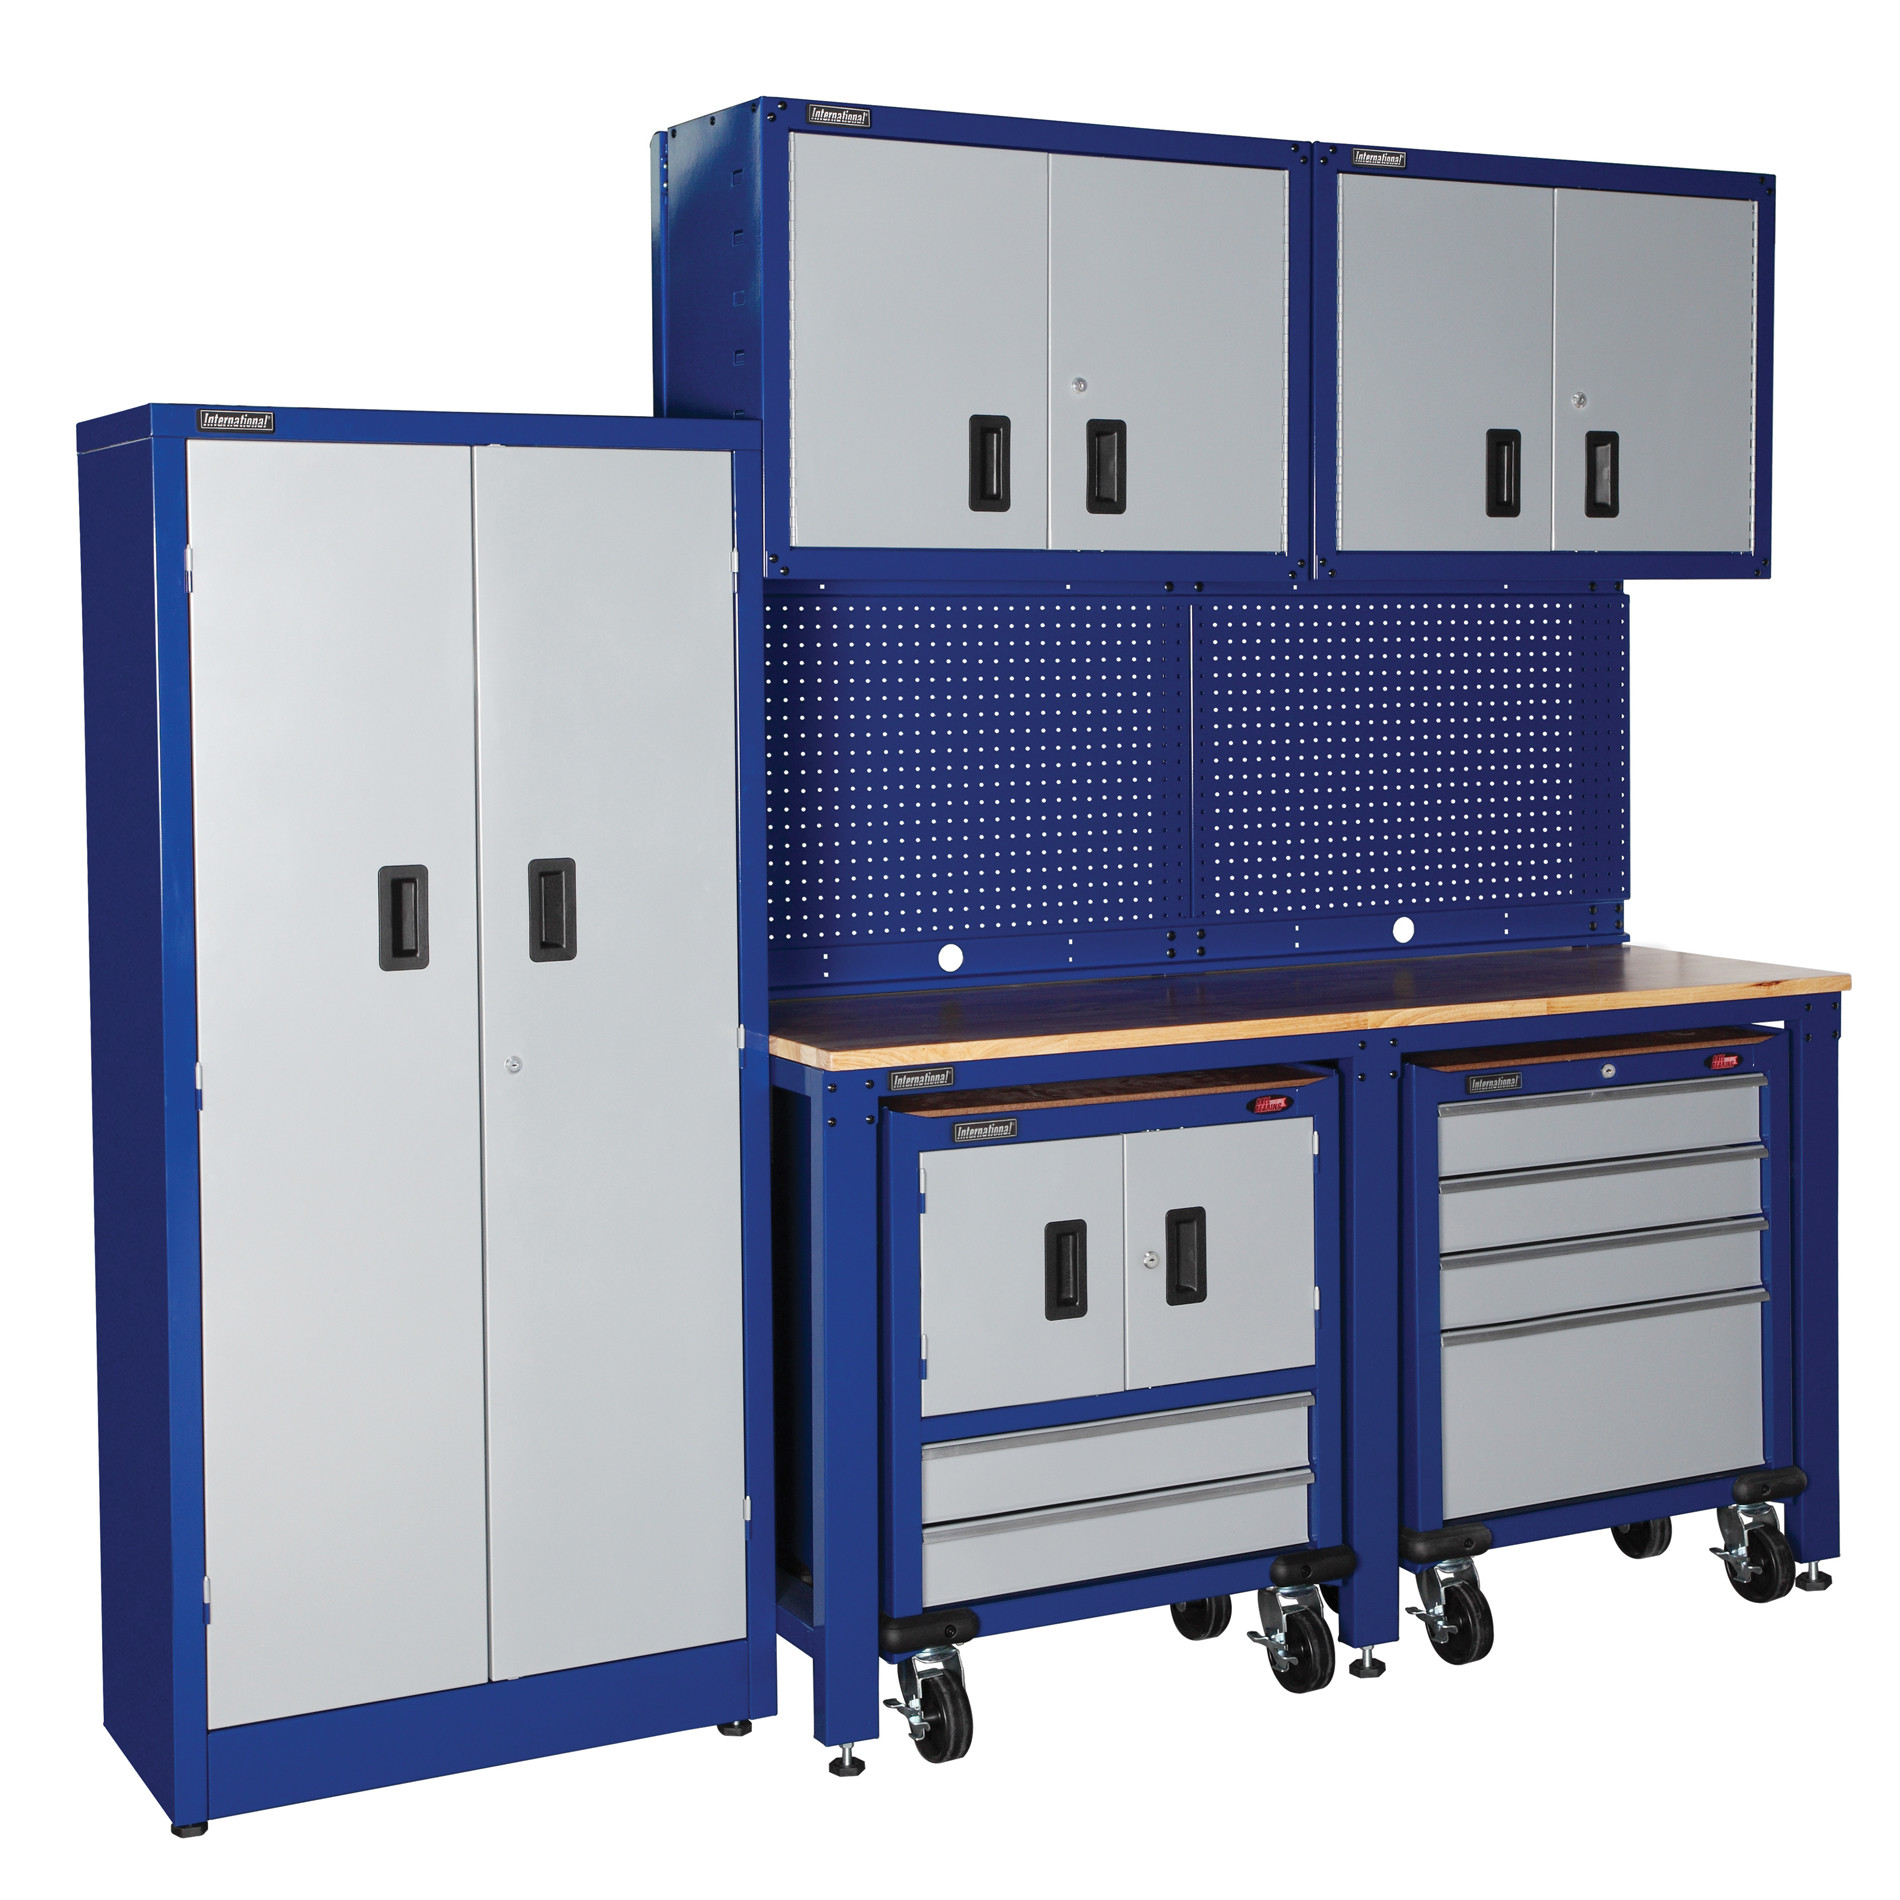 Craftsman Garage Organization
 International 8 piece Garage Modular Storage System PLUS